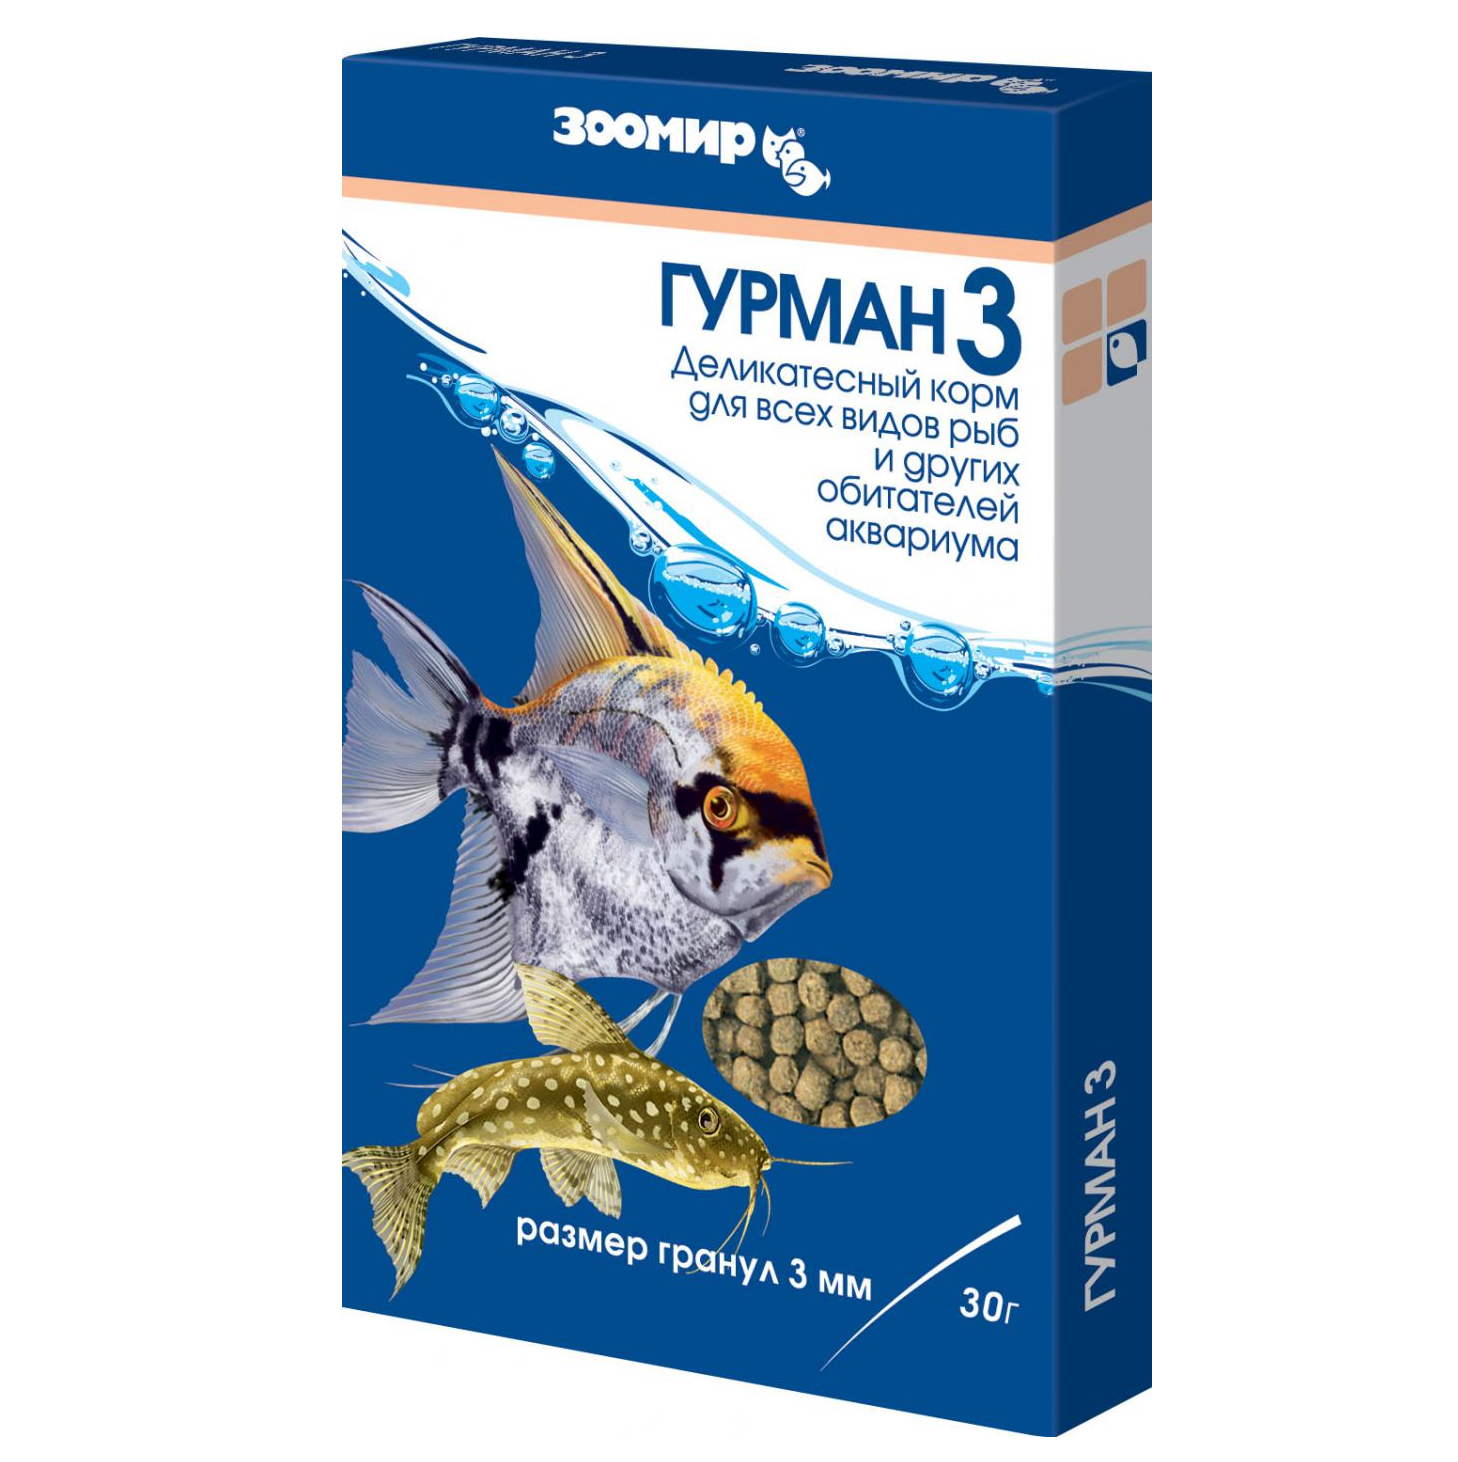 ЗООМИР Гурман - 3 мм б/п 30г (гранулы) купить в Новосибирске